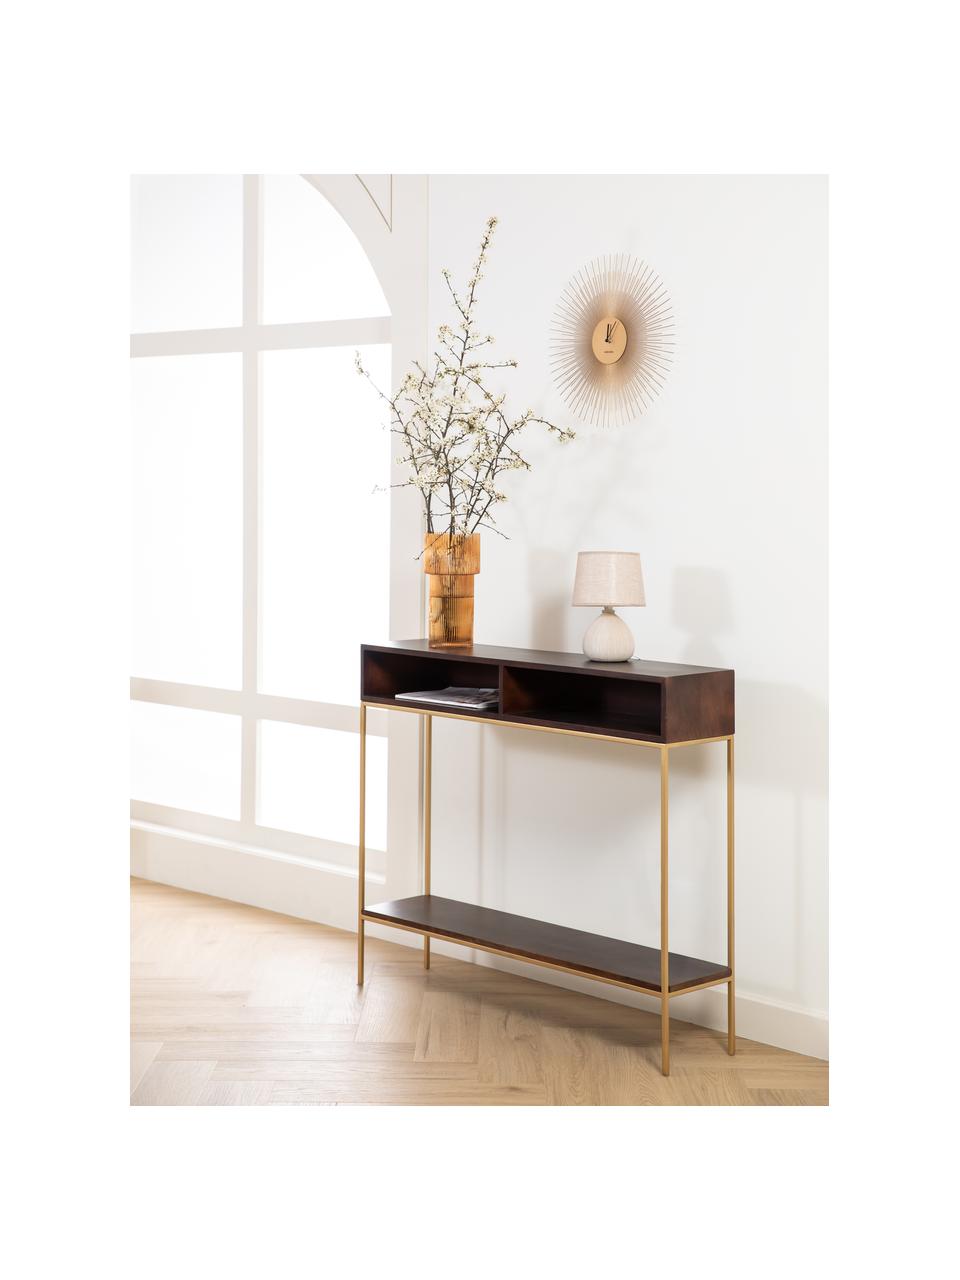 Konzolový stolek Lyle, Tmavé mangové dřevo, zlatá, Š 105 cm, V 89 cm